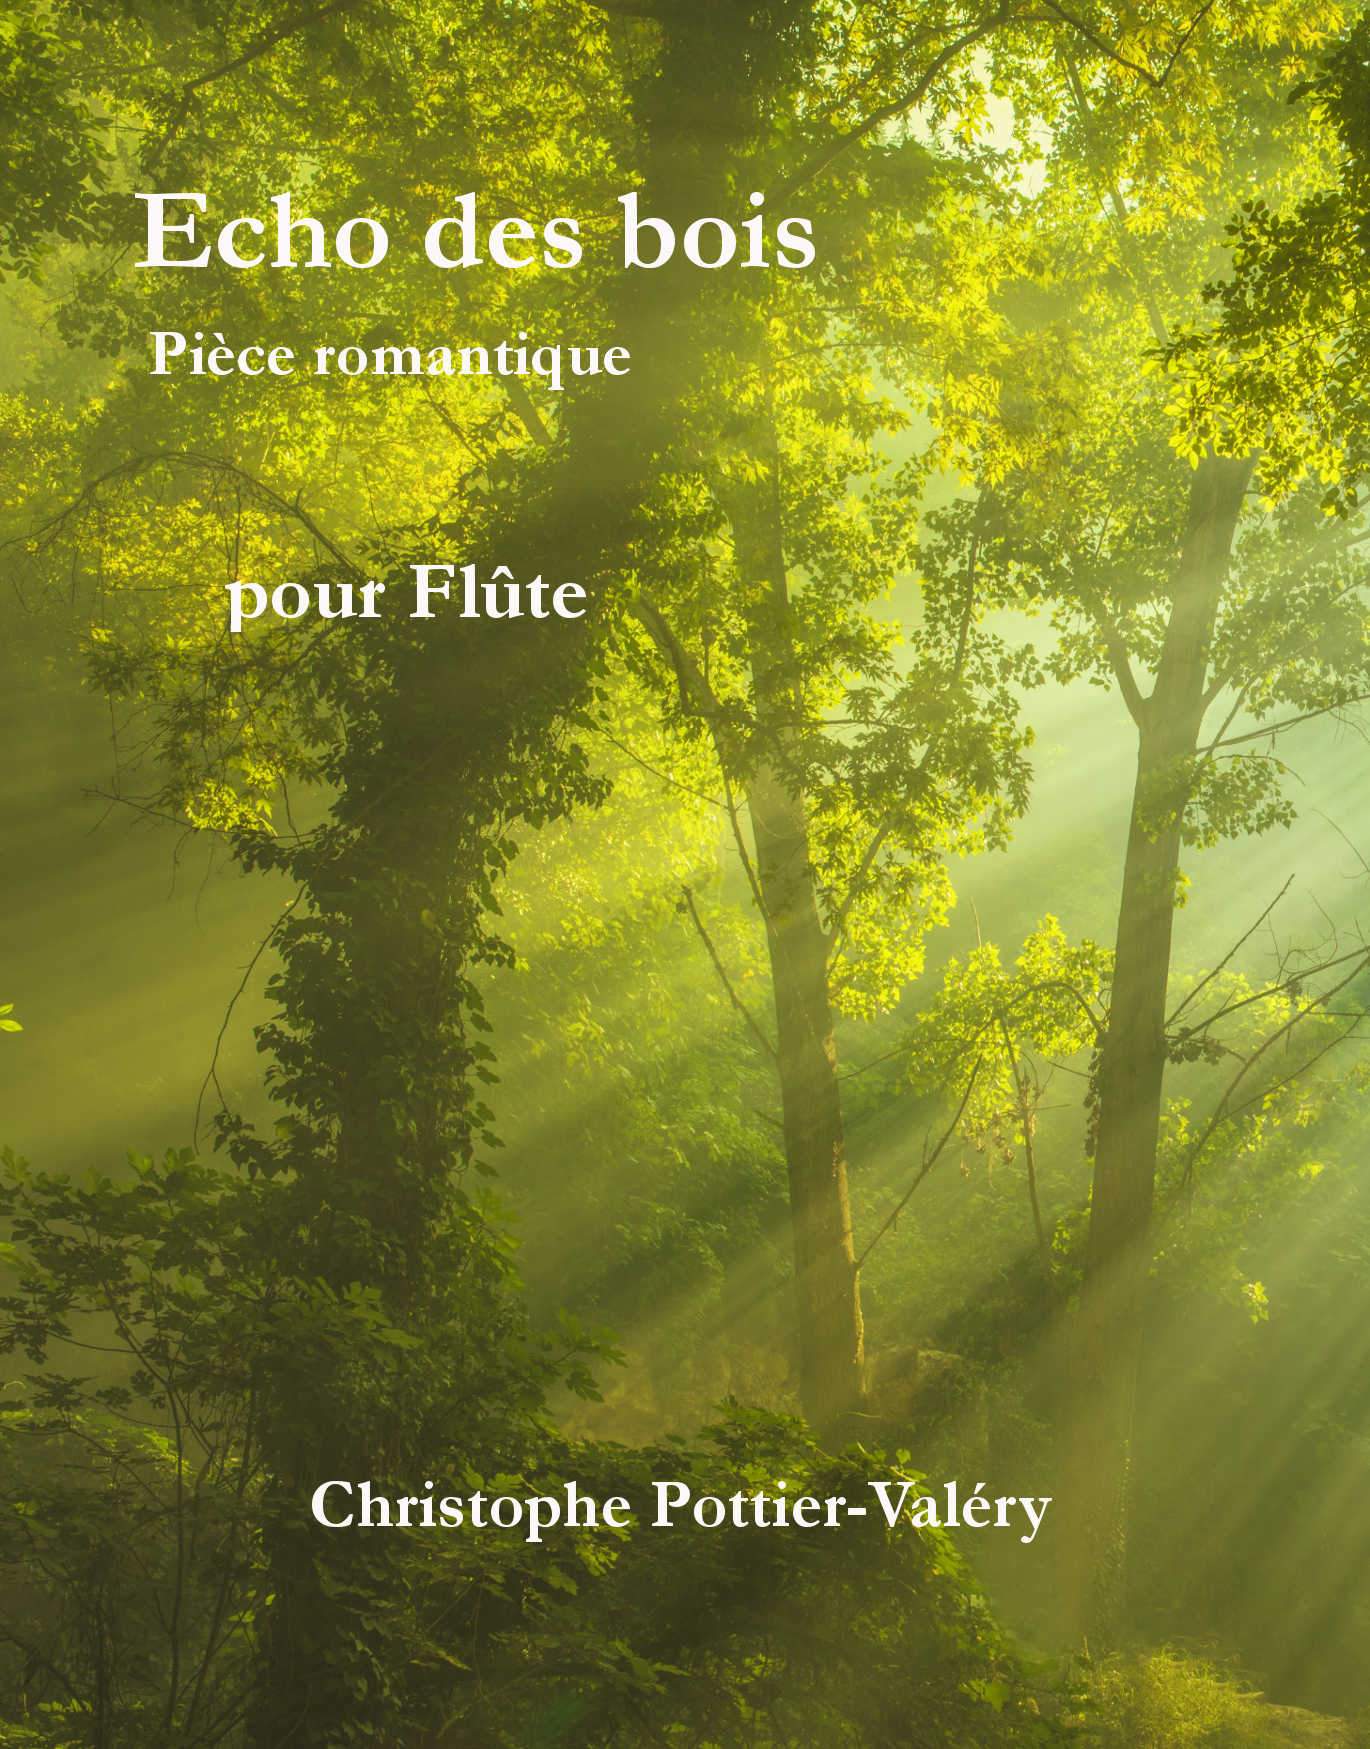 Pottier-Valéry, Christophe: Echo des bois